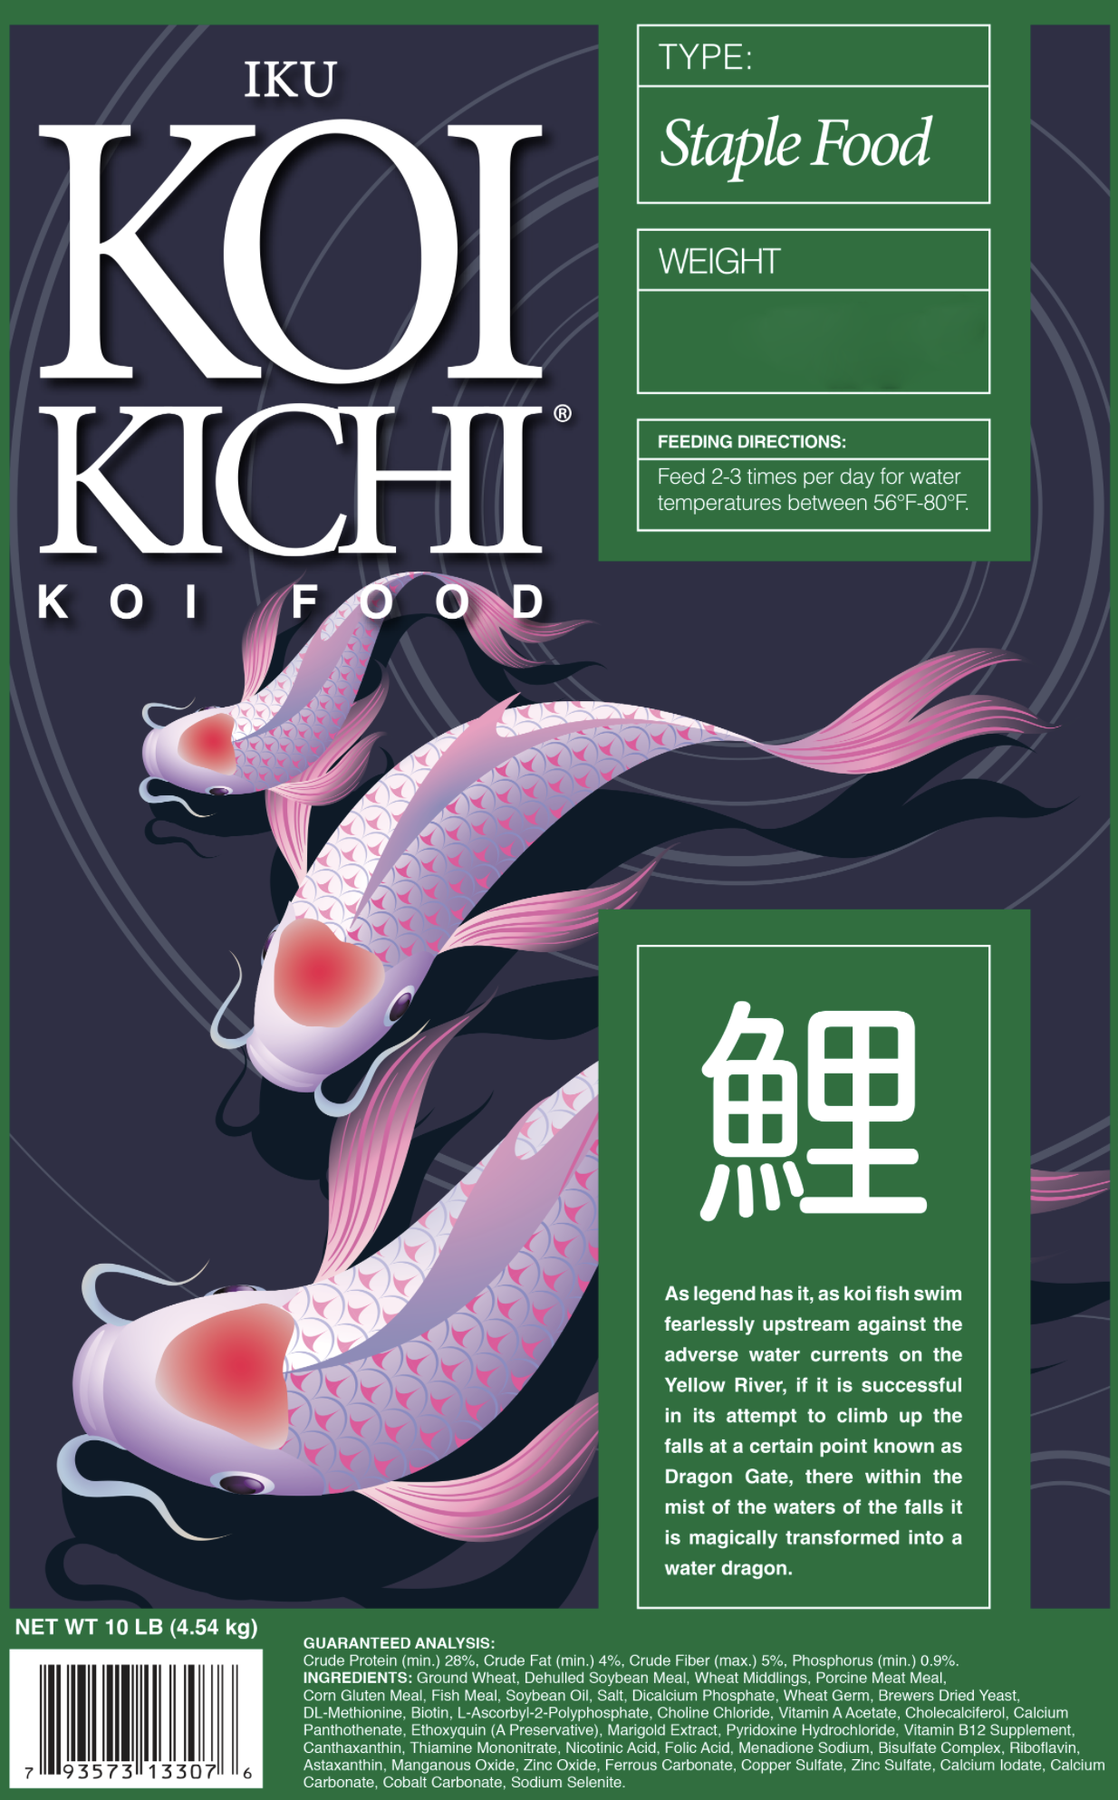 Iku Koi Kichi Staple Koi Fish Food